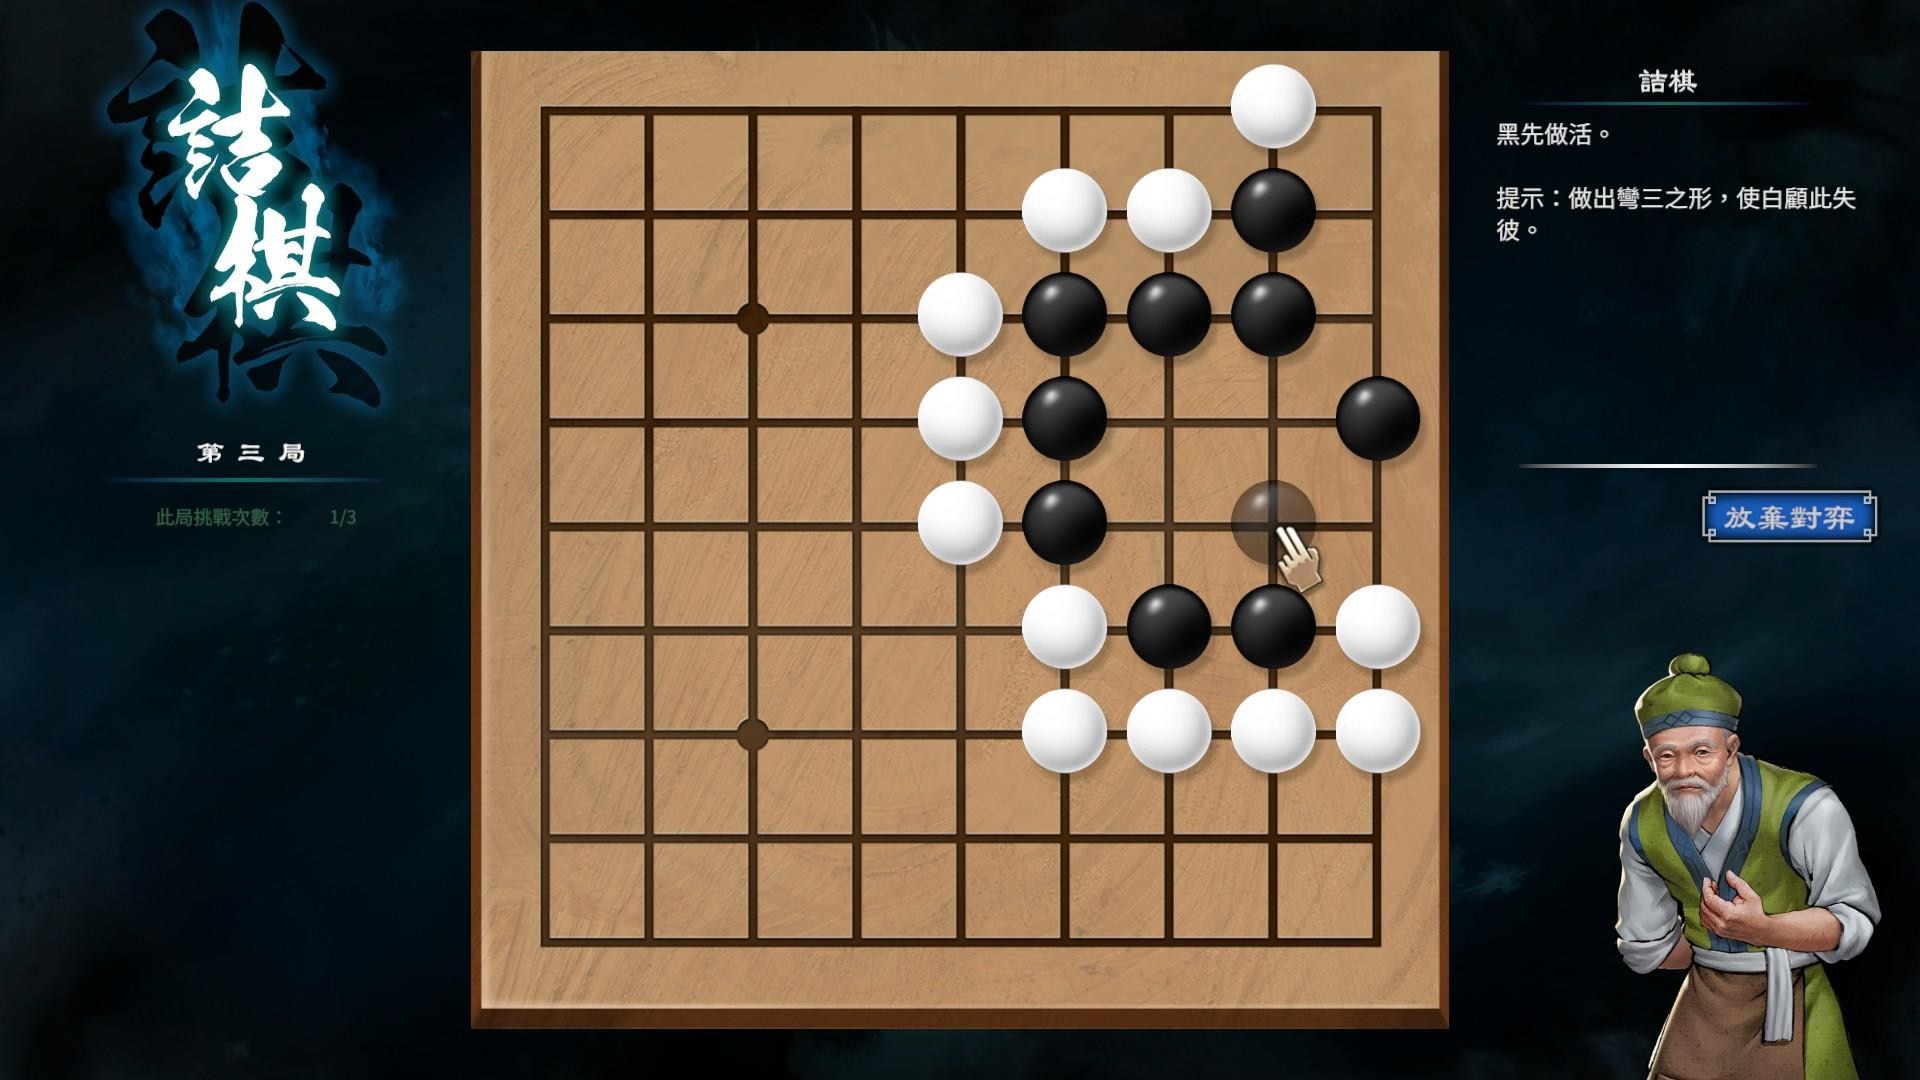 《天命奇御2》围棋基本概念与棋型解法介绍 - 第12张